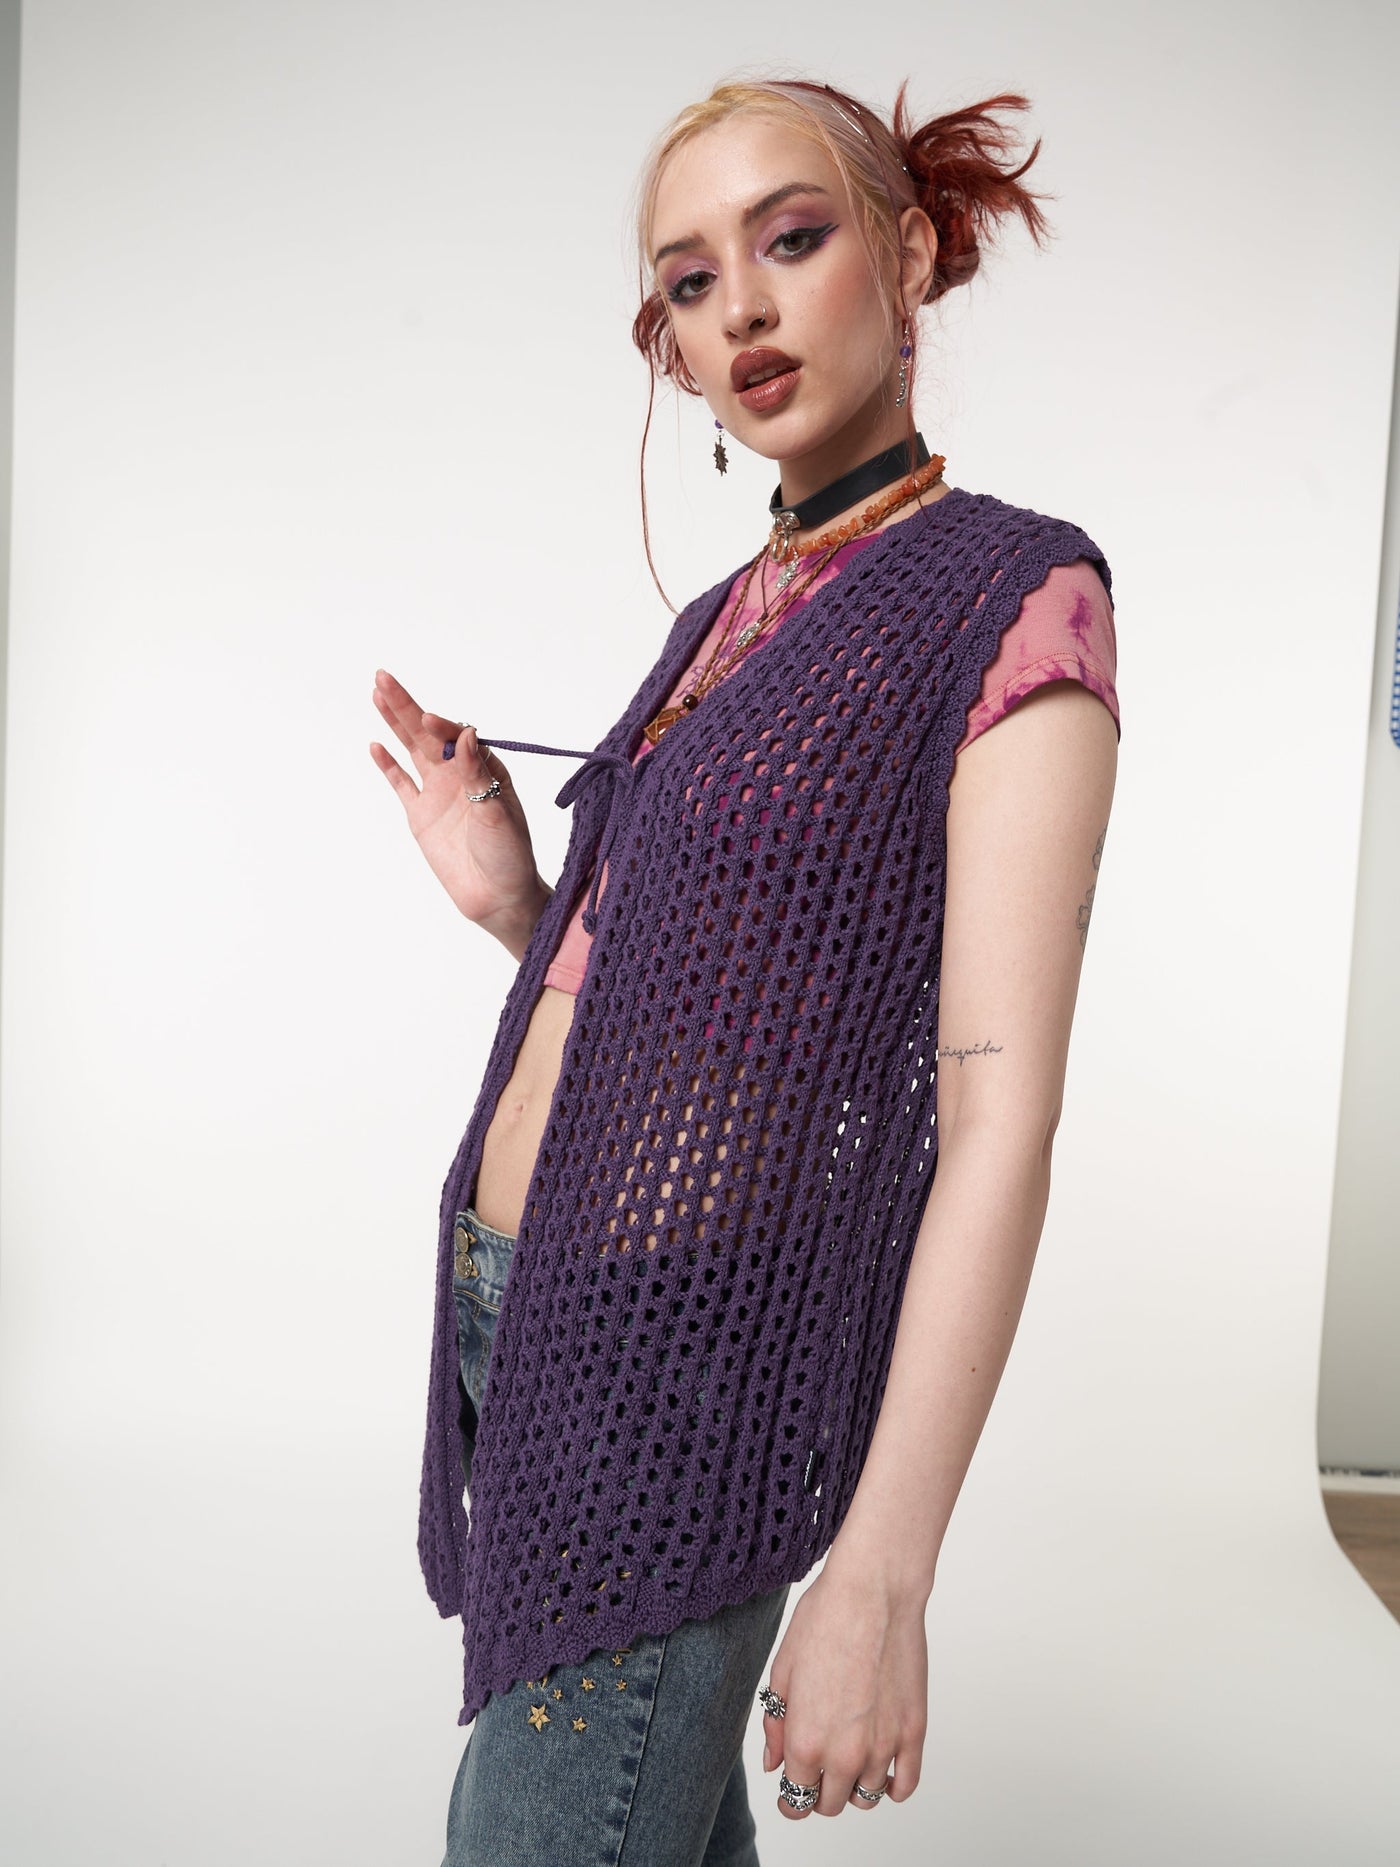 Tie front vest cardigan in purple featuring crochet style knit pattern